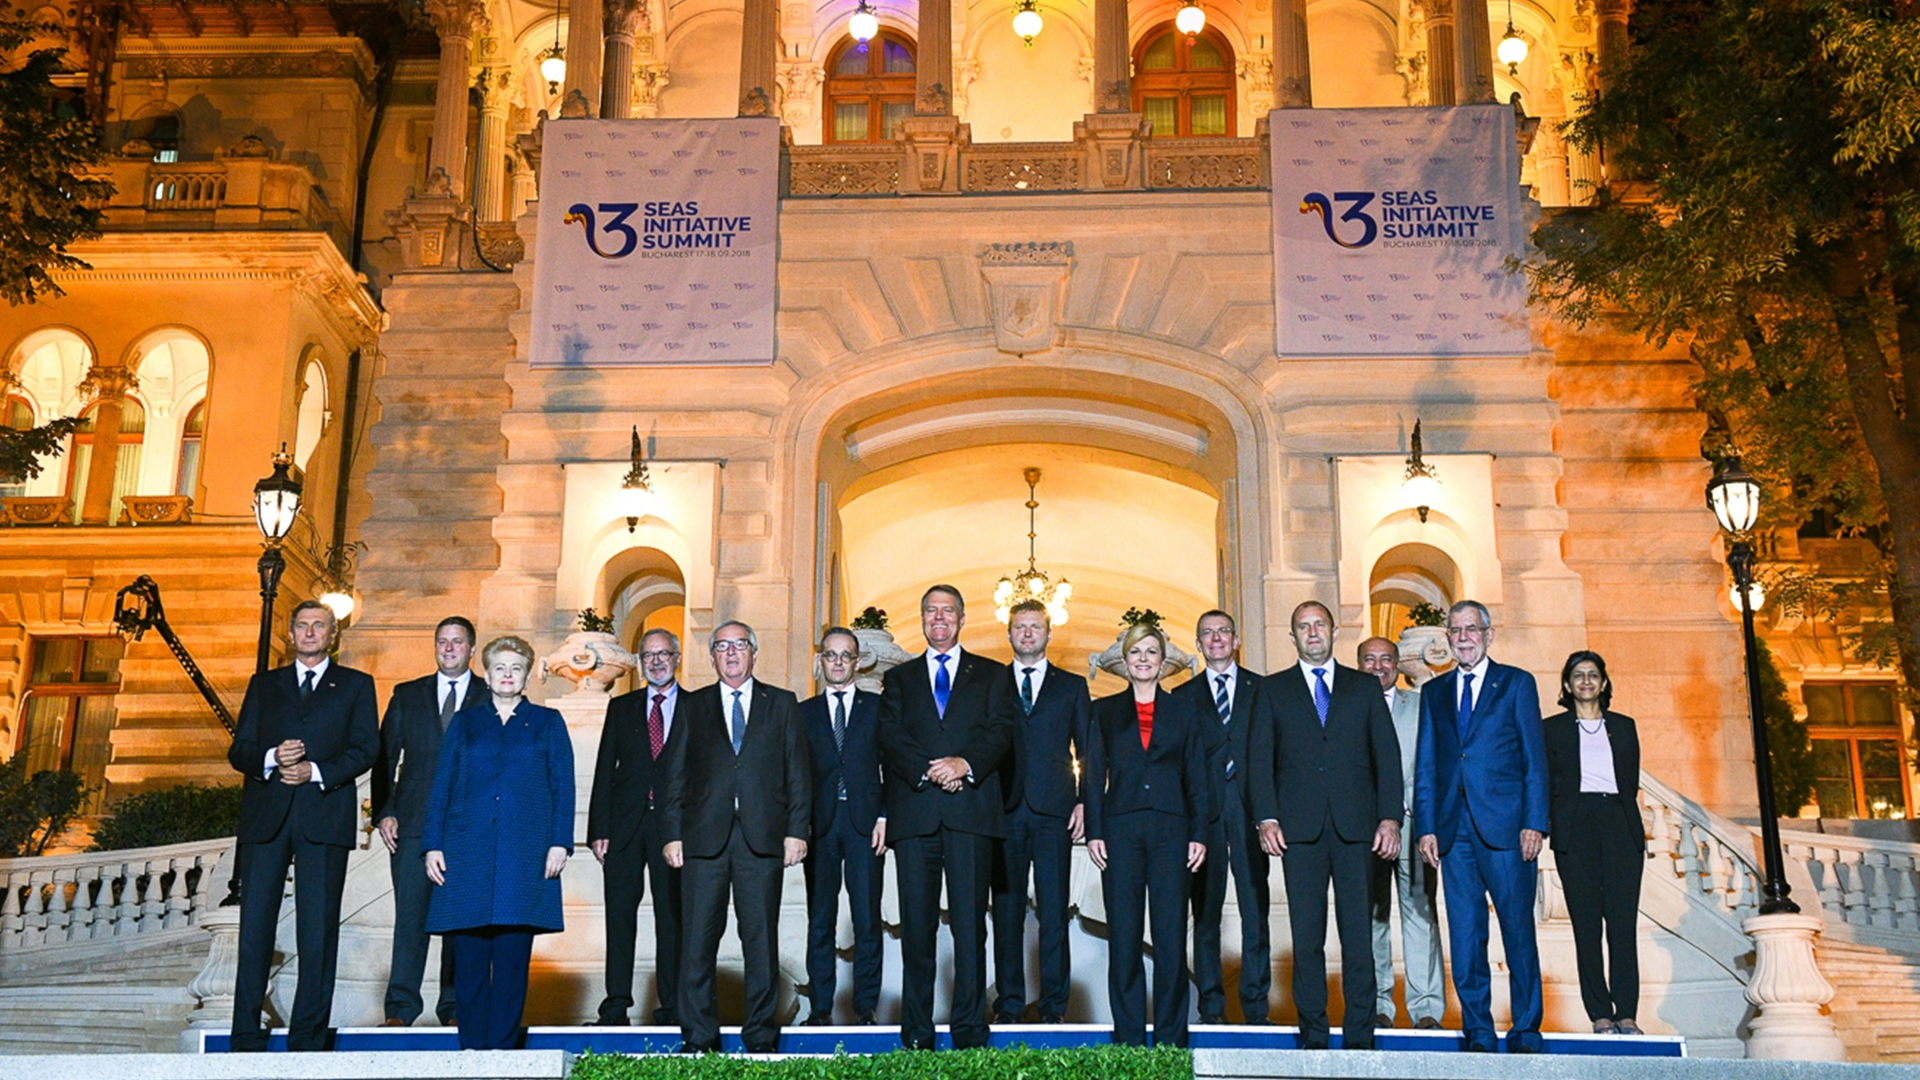 Die Mitglieder der Drei-Meere-Initative beim Treffen in Bukarest | Romanian Presidency/HANDOUT/EPA-